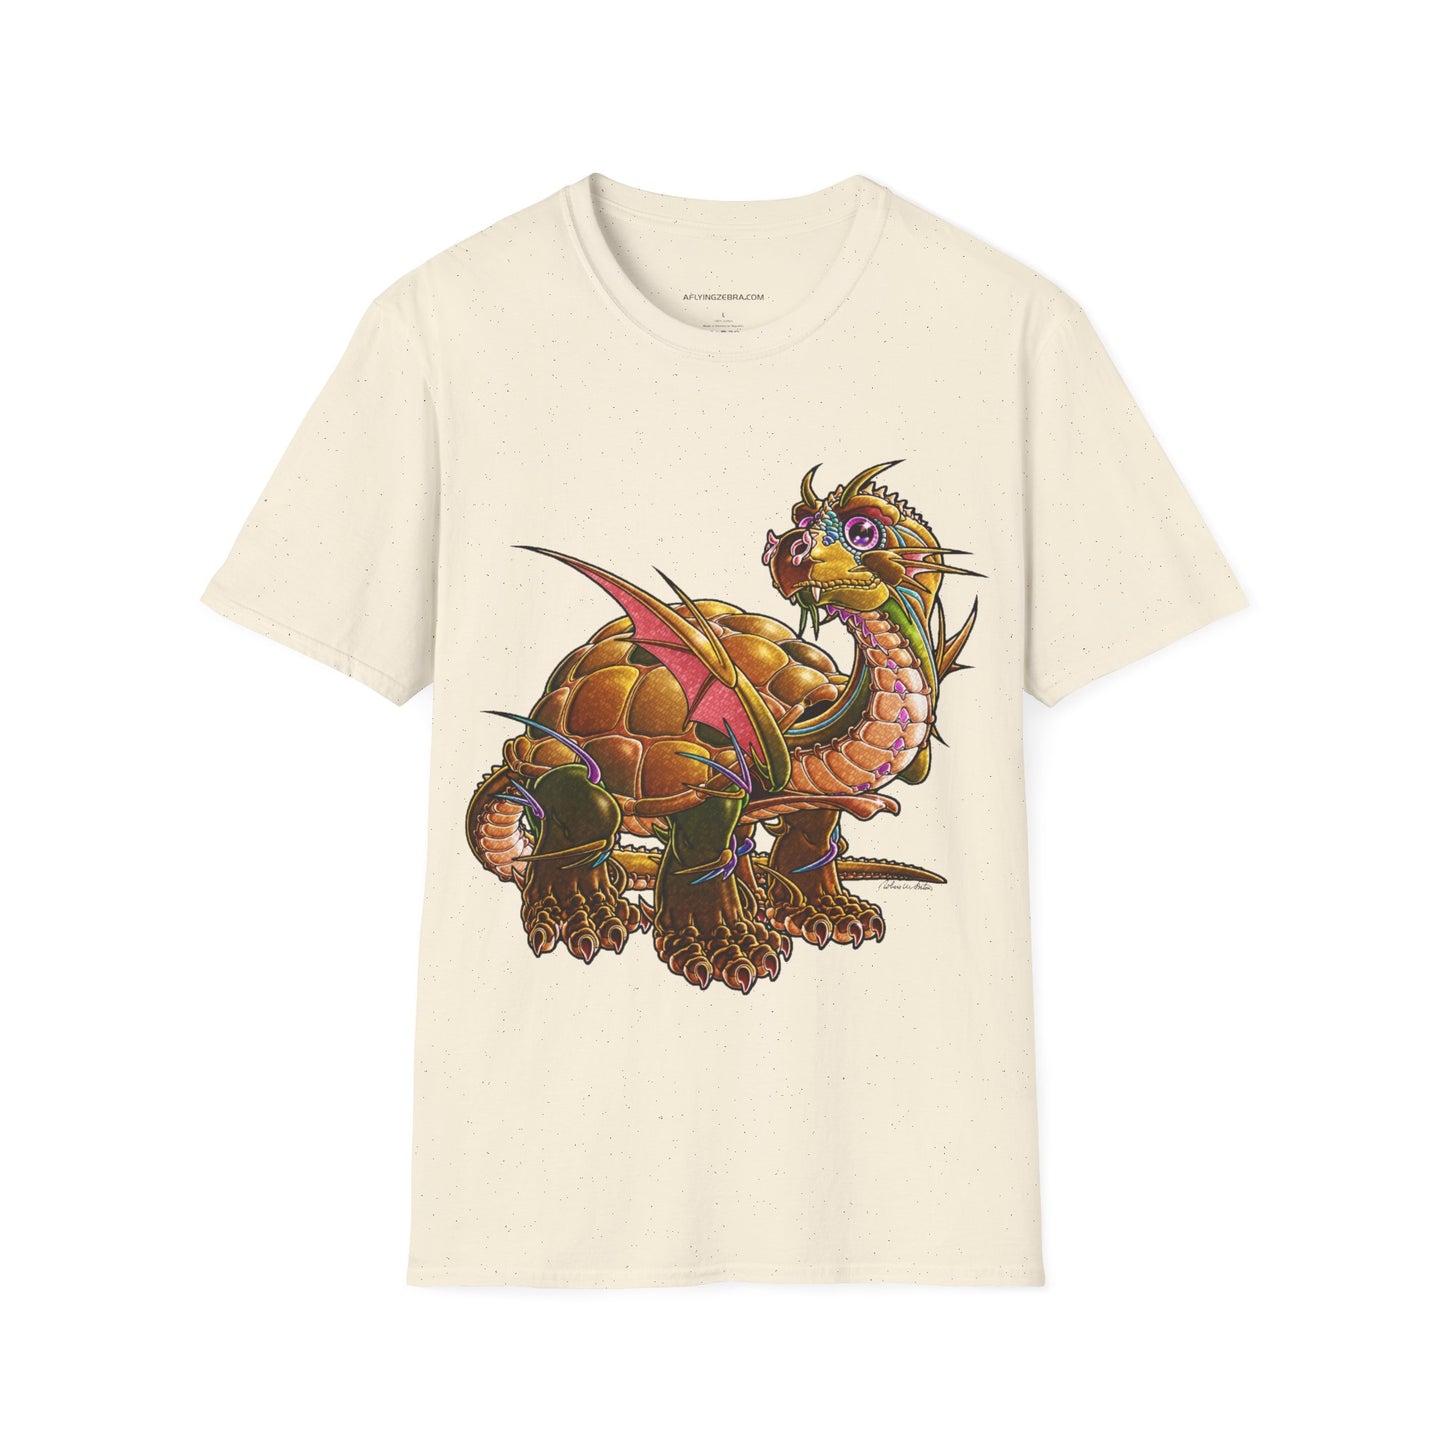 Unisex Softstyle T-Shirt (SHELLDON)